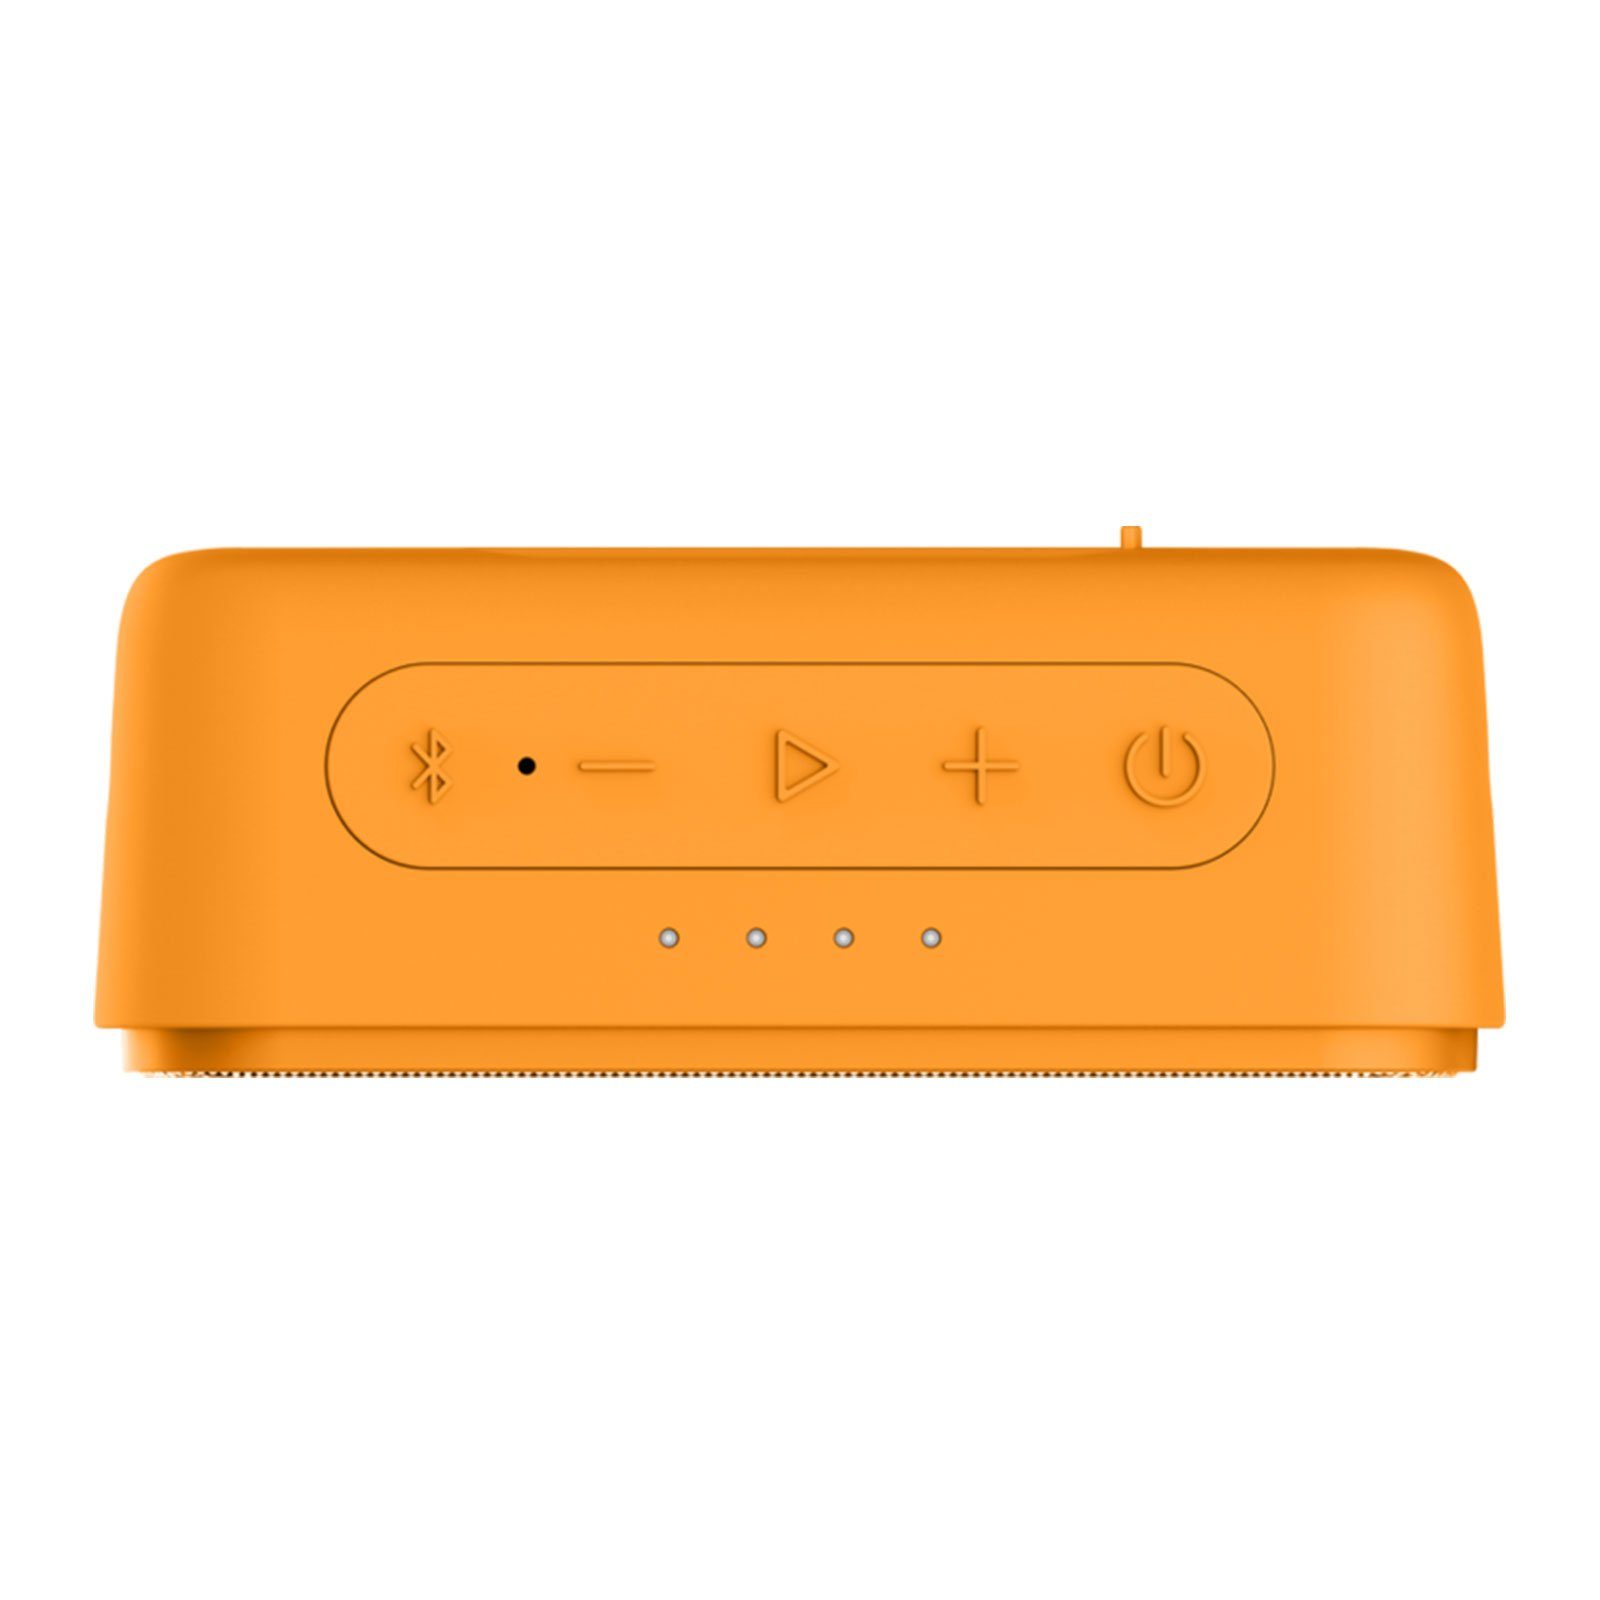 W) JAM Lautsprecher Bluetooth-Lautsprecher Grundig GBT Orange (3.5